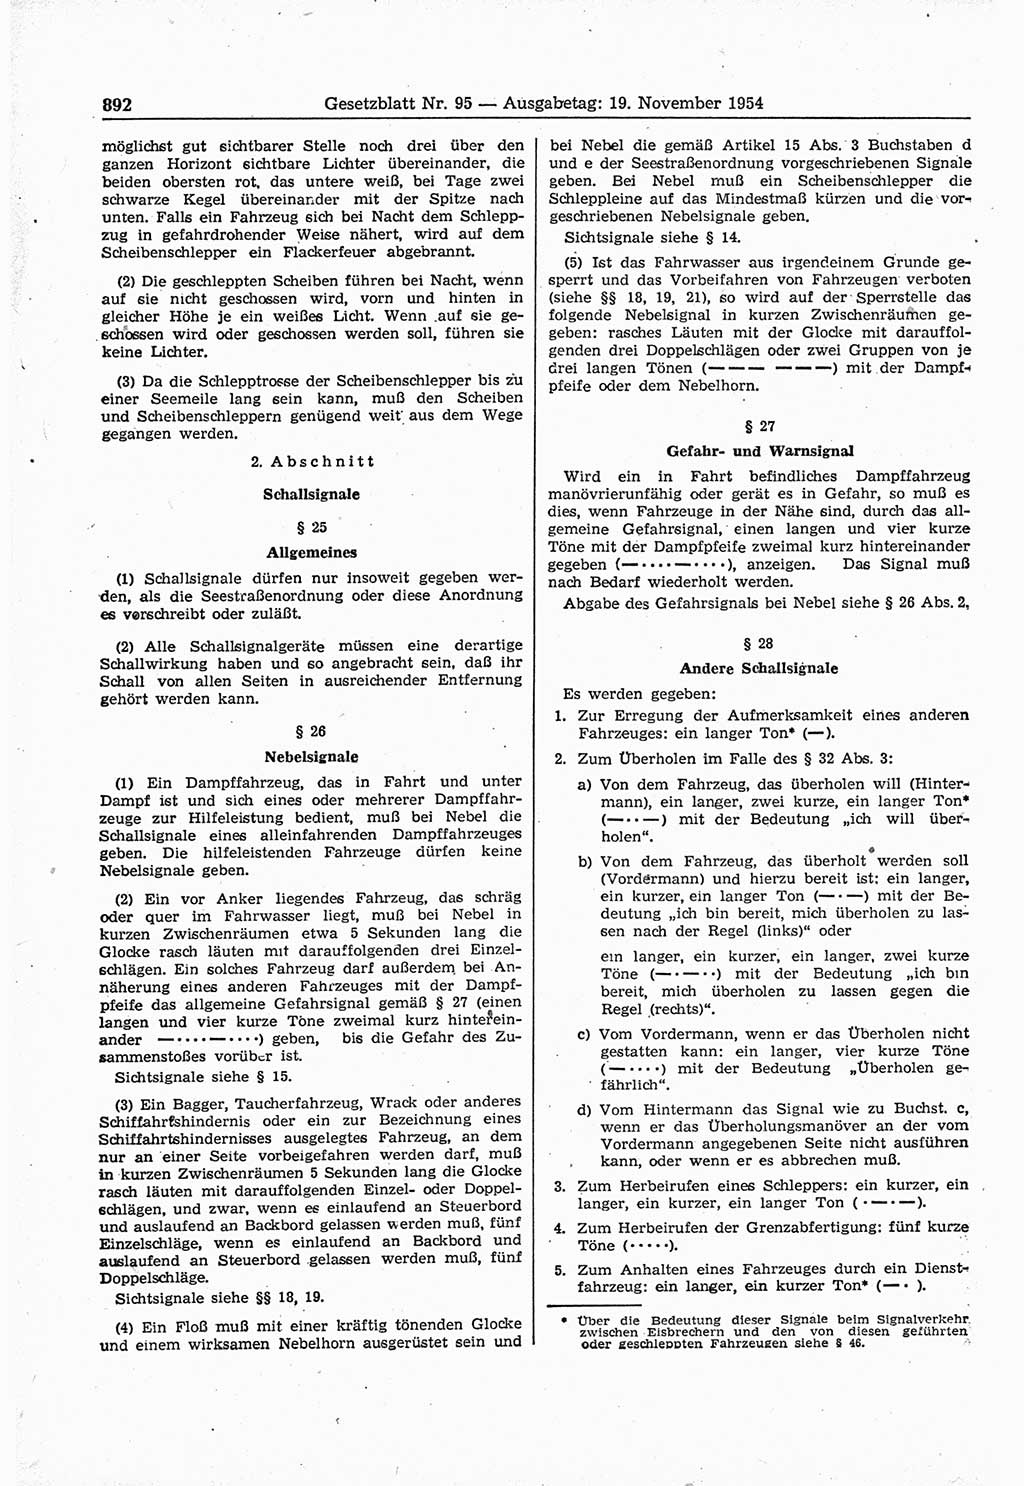 Gesetzblatt (GBl.) der Deutschen Demokratischen Republik (DDR) 1954, Seite 892 (GBl. DDR 1954, S. 892)